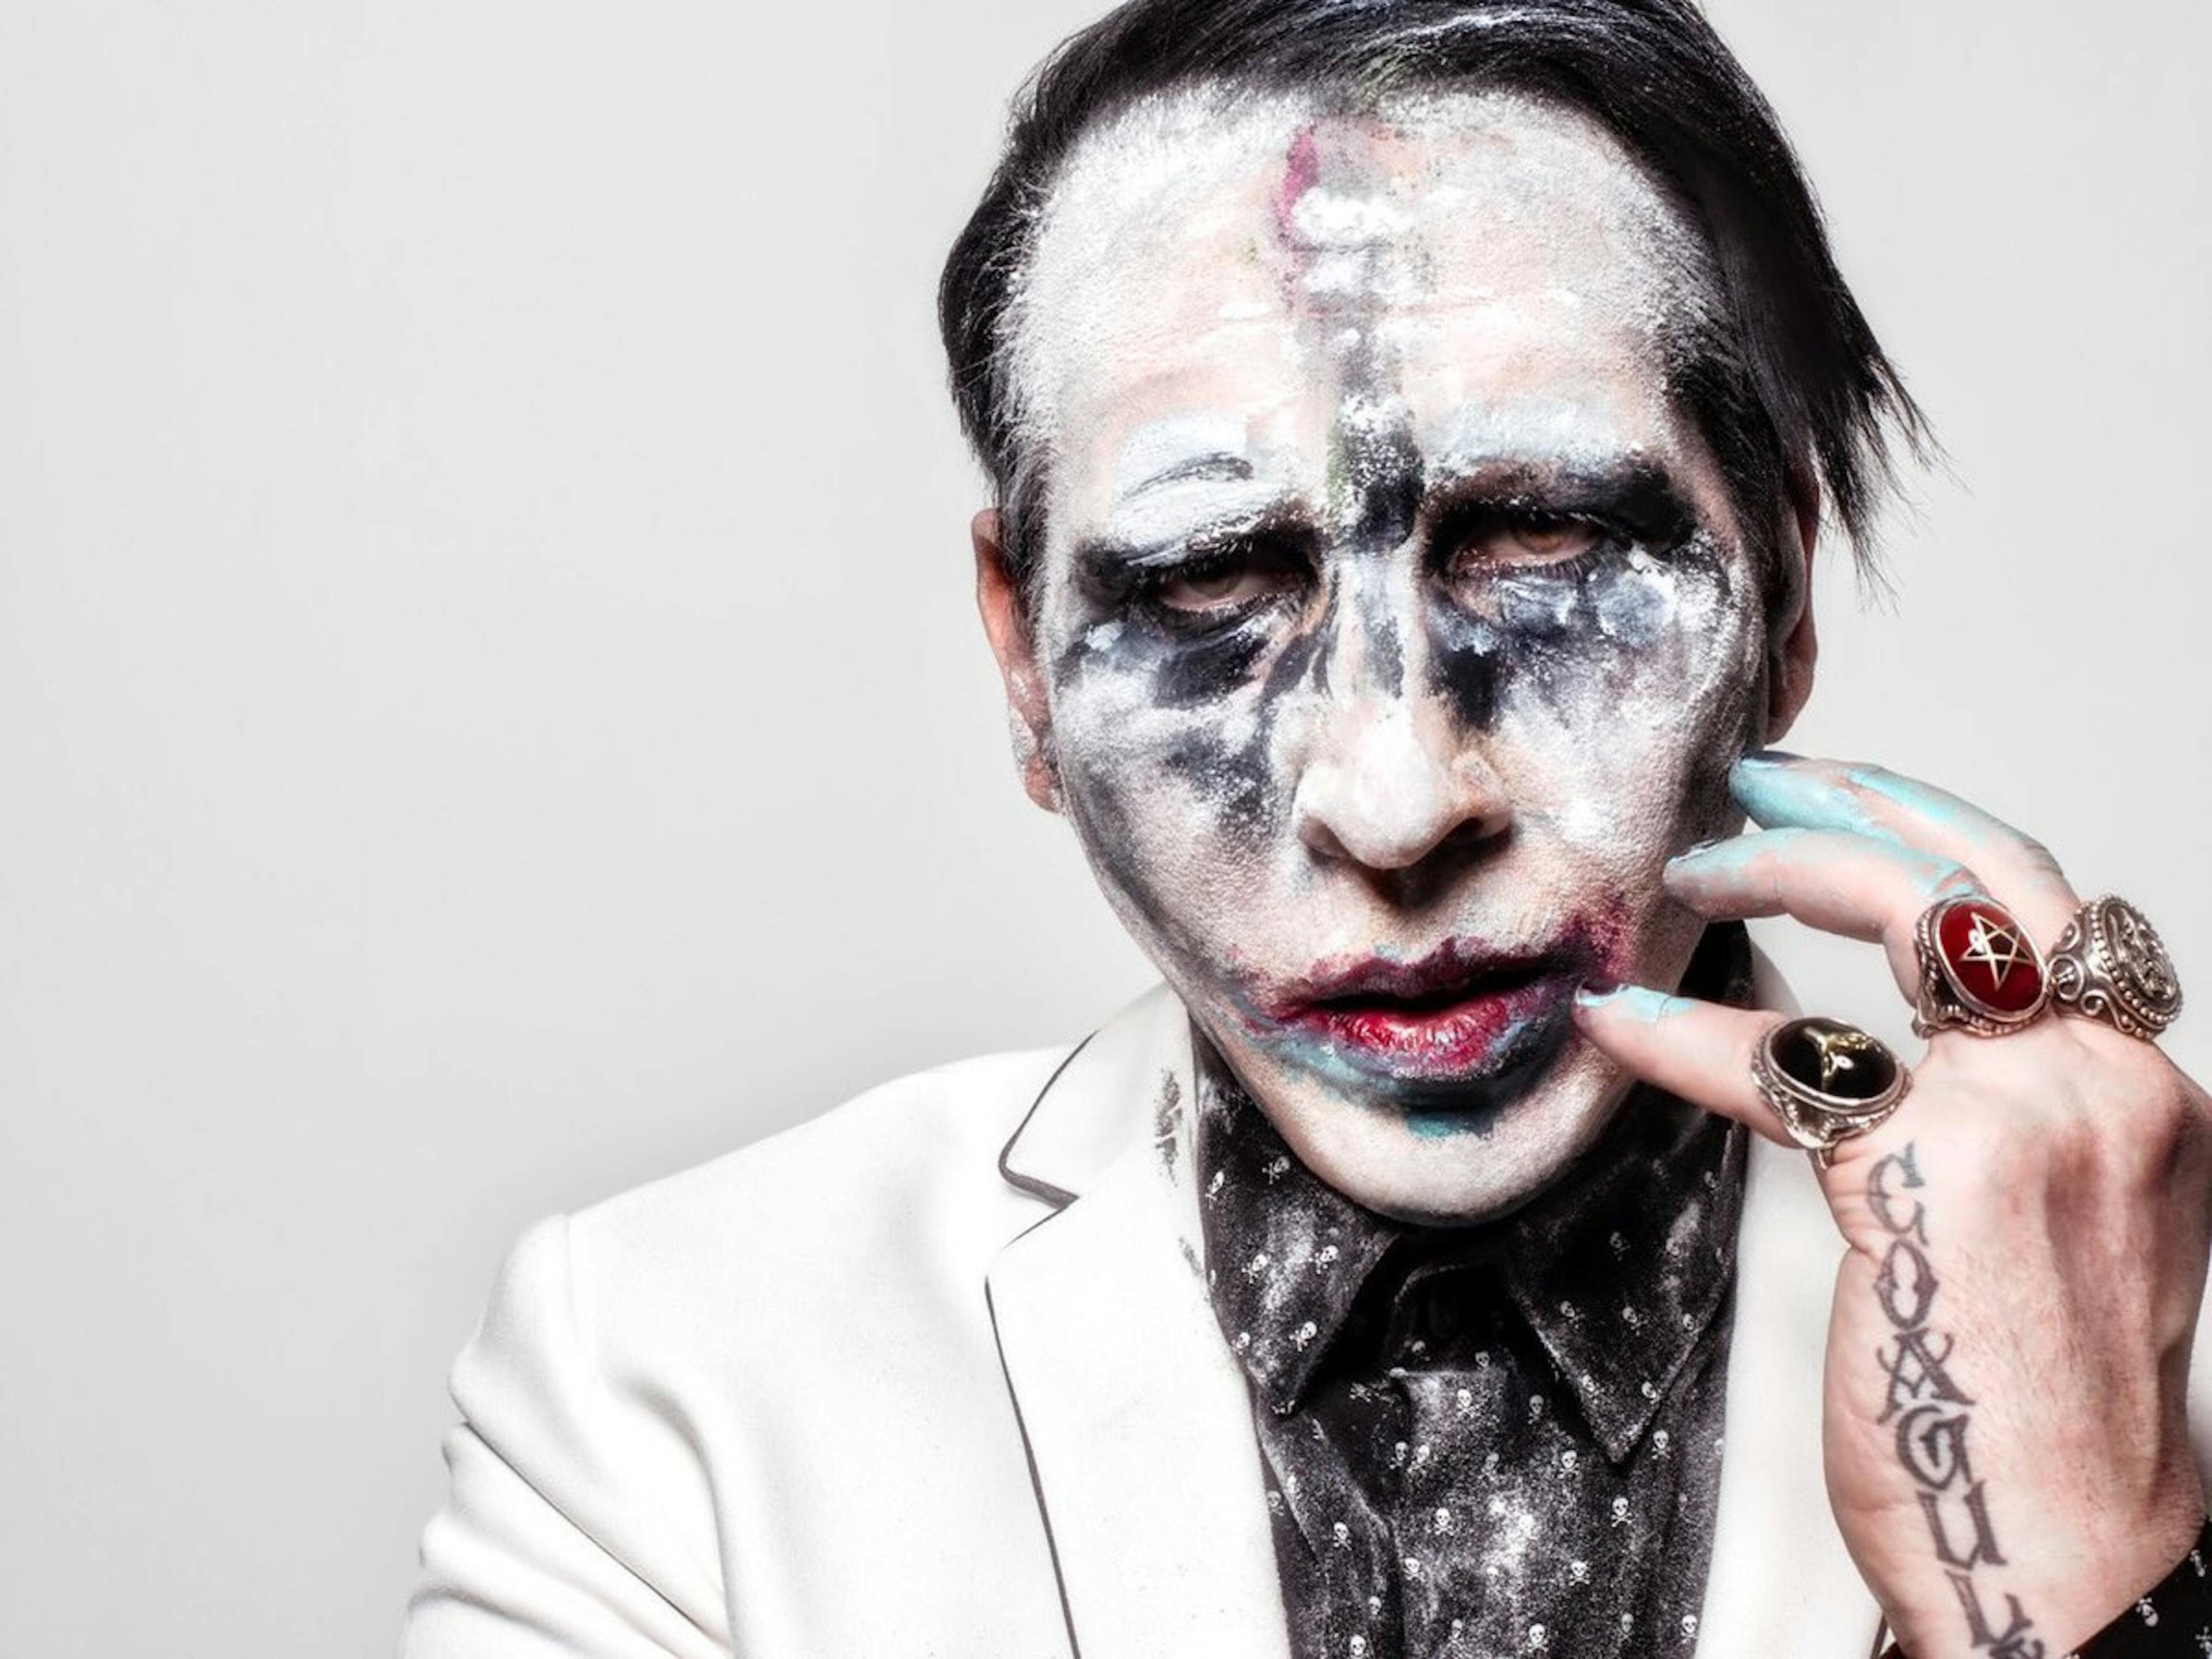 Is Marilyn Manson Teasing A New Album?